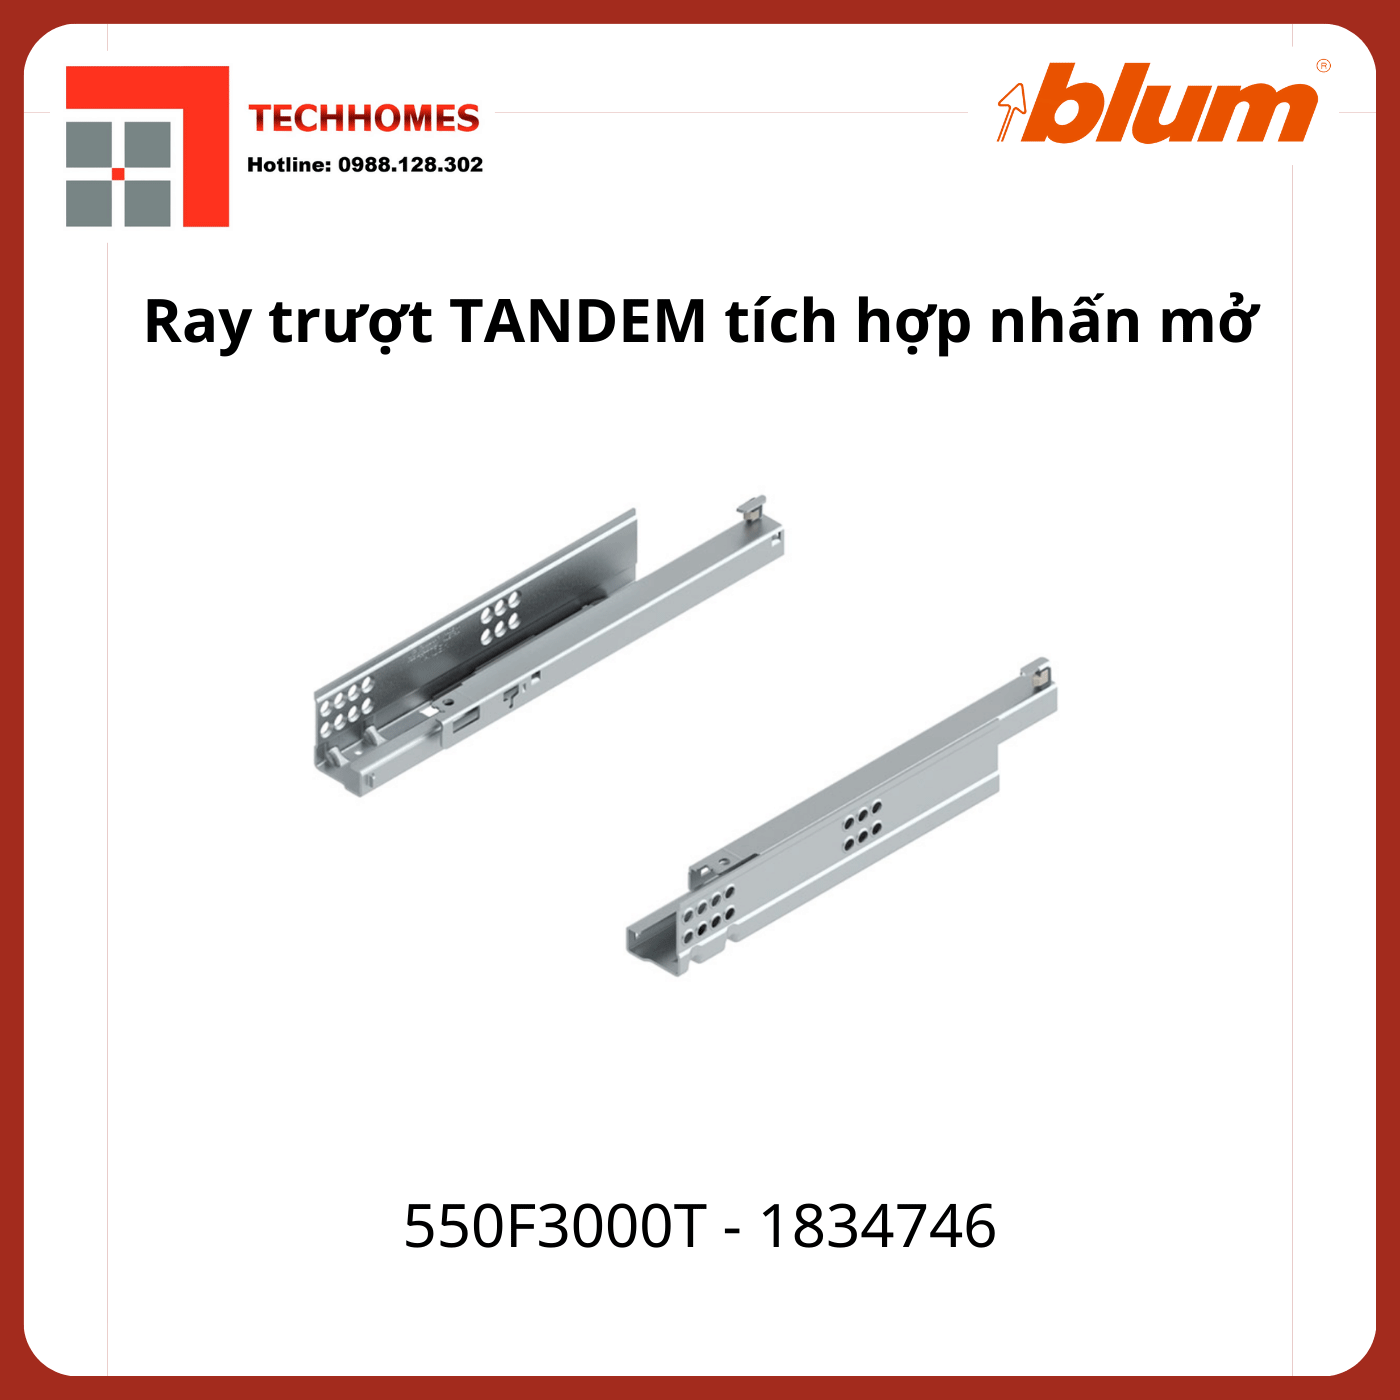 Ray trượt Blum TANDEM tích hợp nhấn mở 550F3000T 1834746 mở 3/4